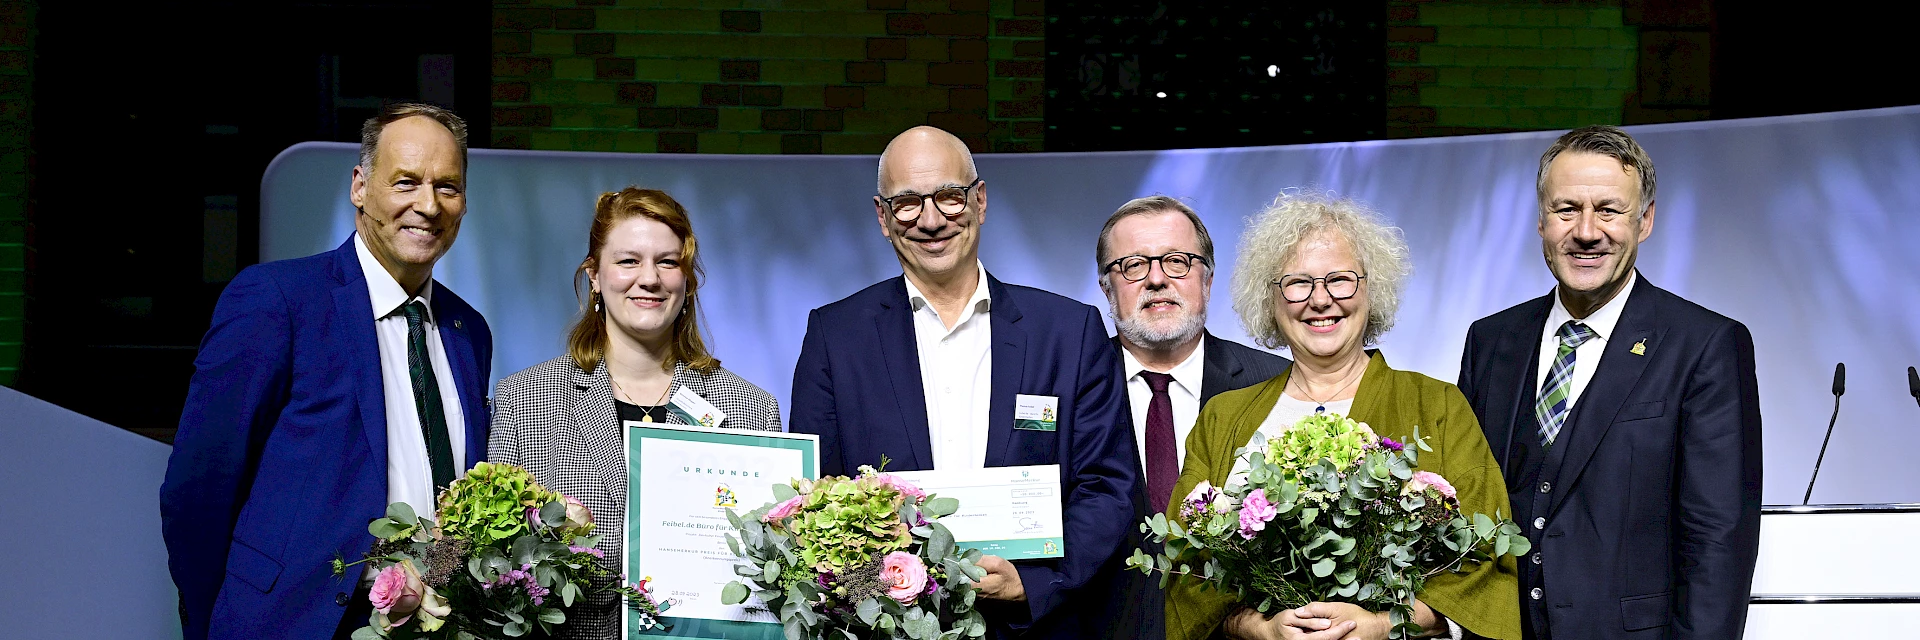 Anerkennungspreisträger:  Feibel.de Büro für Kindermedien Projekt: “ Deutscher Kindersoftwarepreis TOMMI“ Berlin